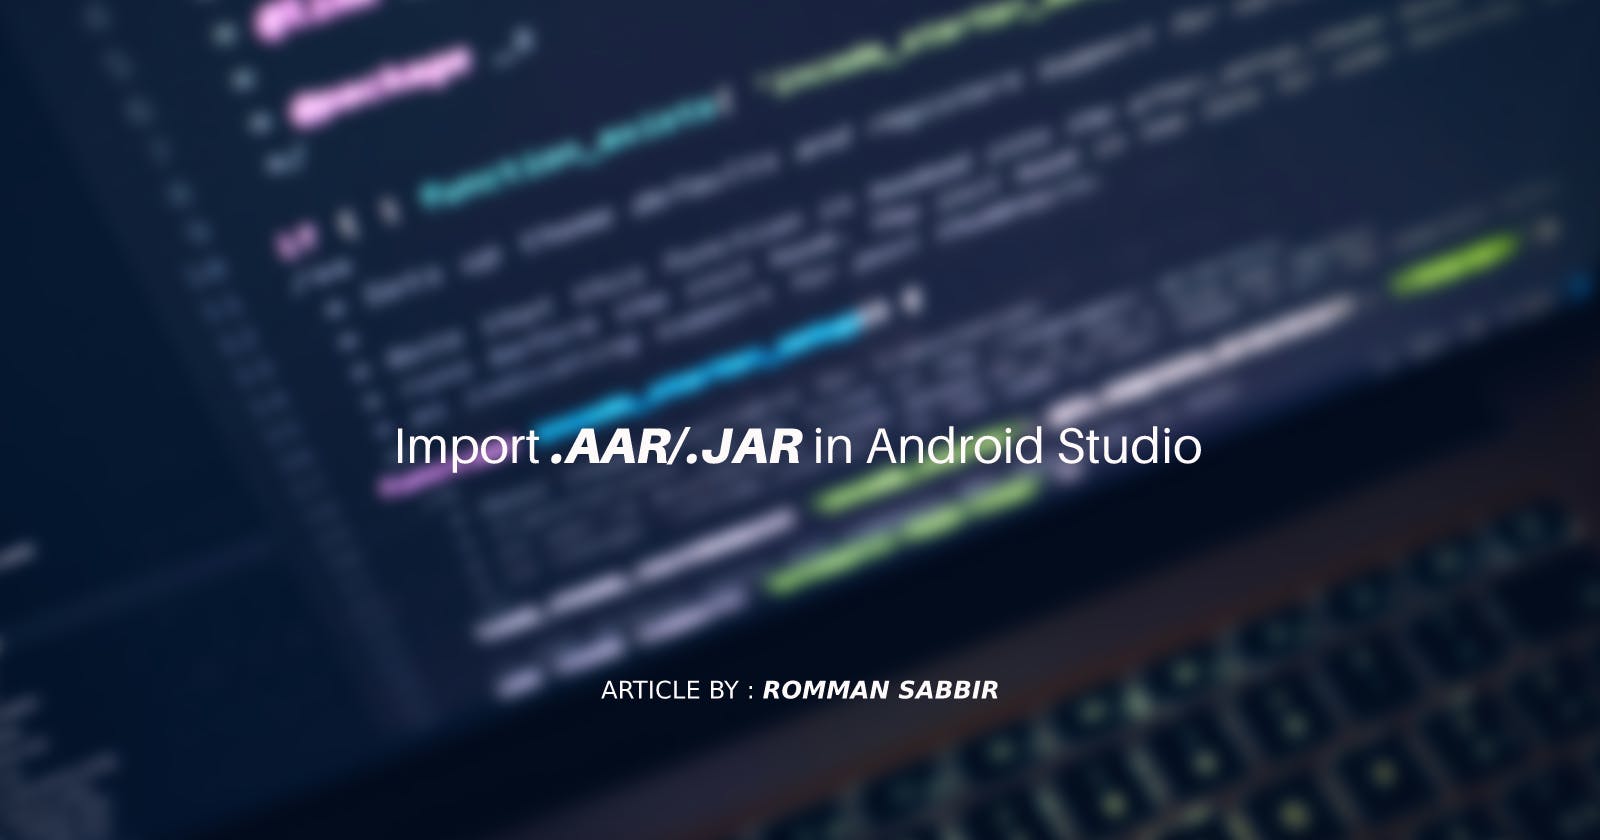 Import .AAR/.JAR in Android Studio